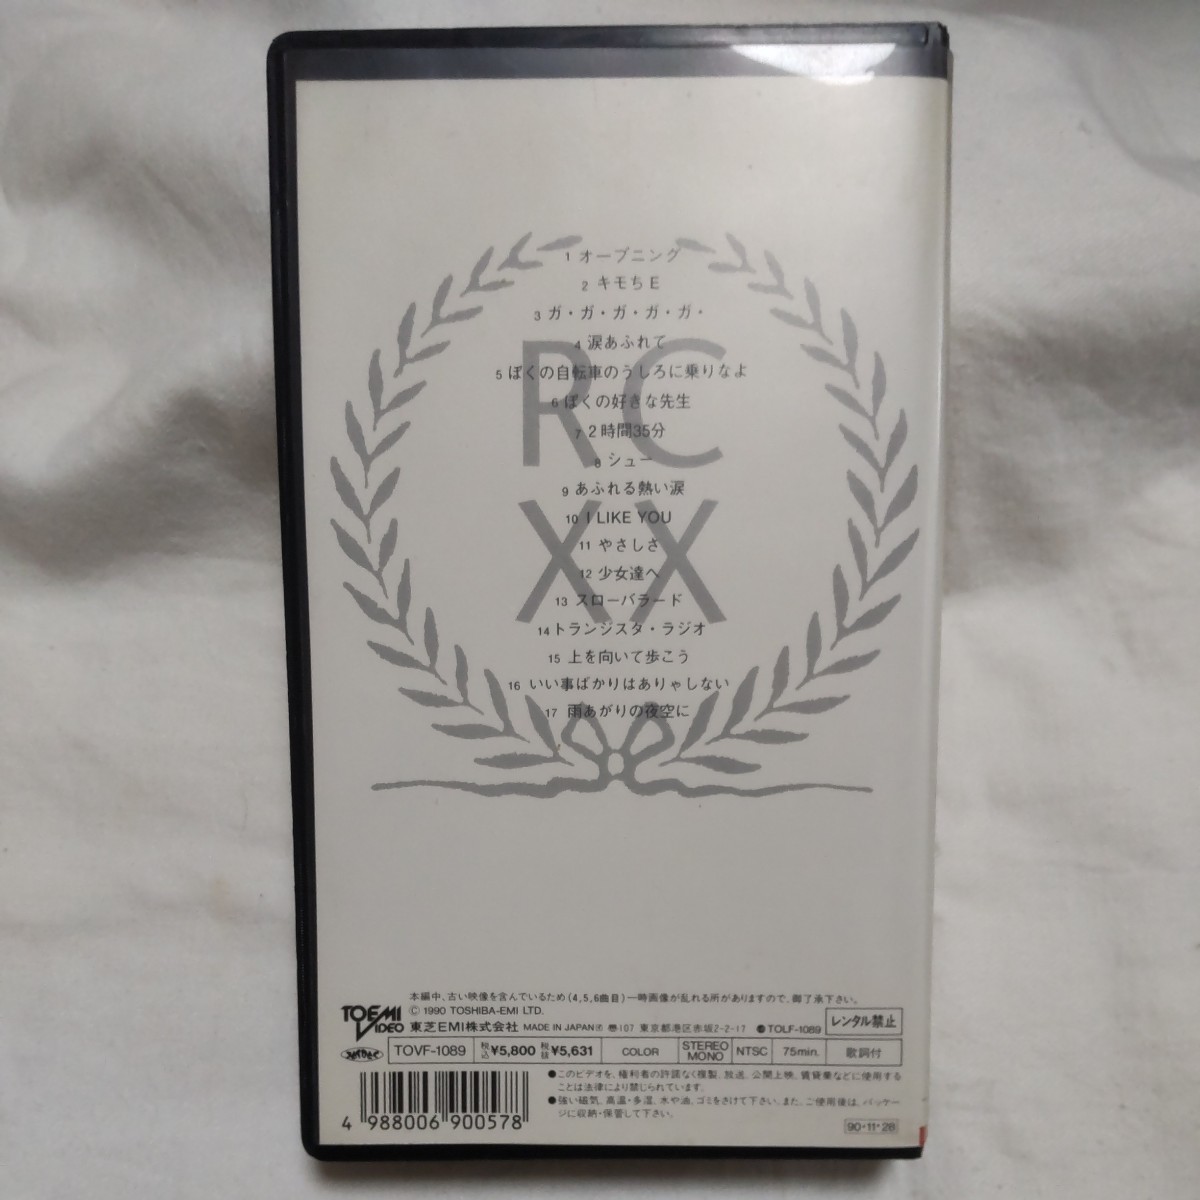  RC SUCCESSION 忌野清志郎 VHSビデオ ミラクル 20th Anniversary 歌詞カード付き_画像2